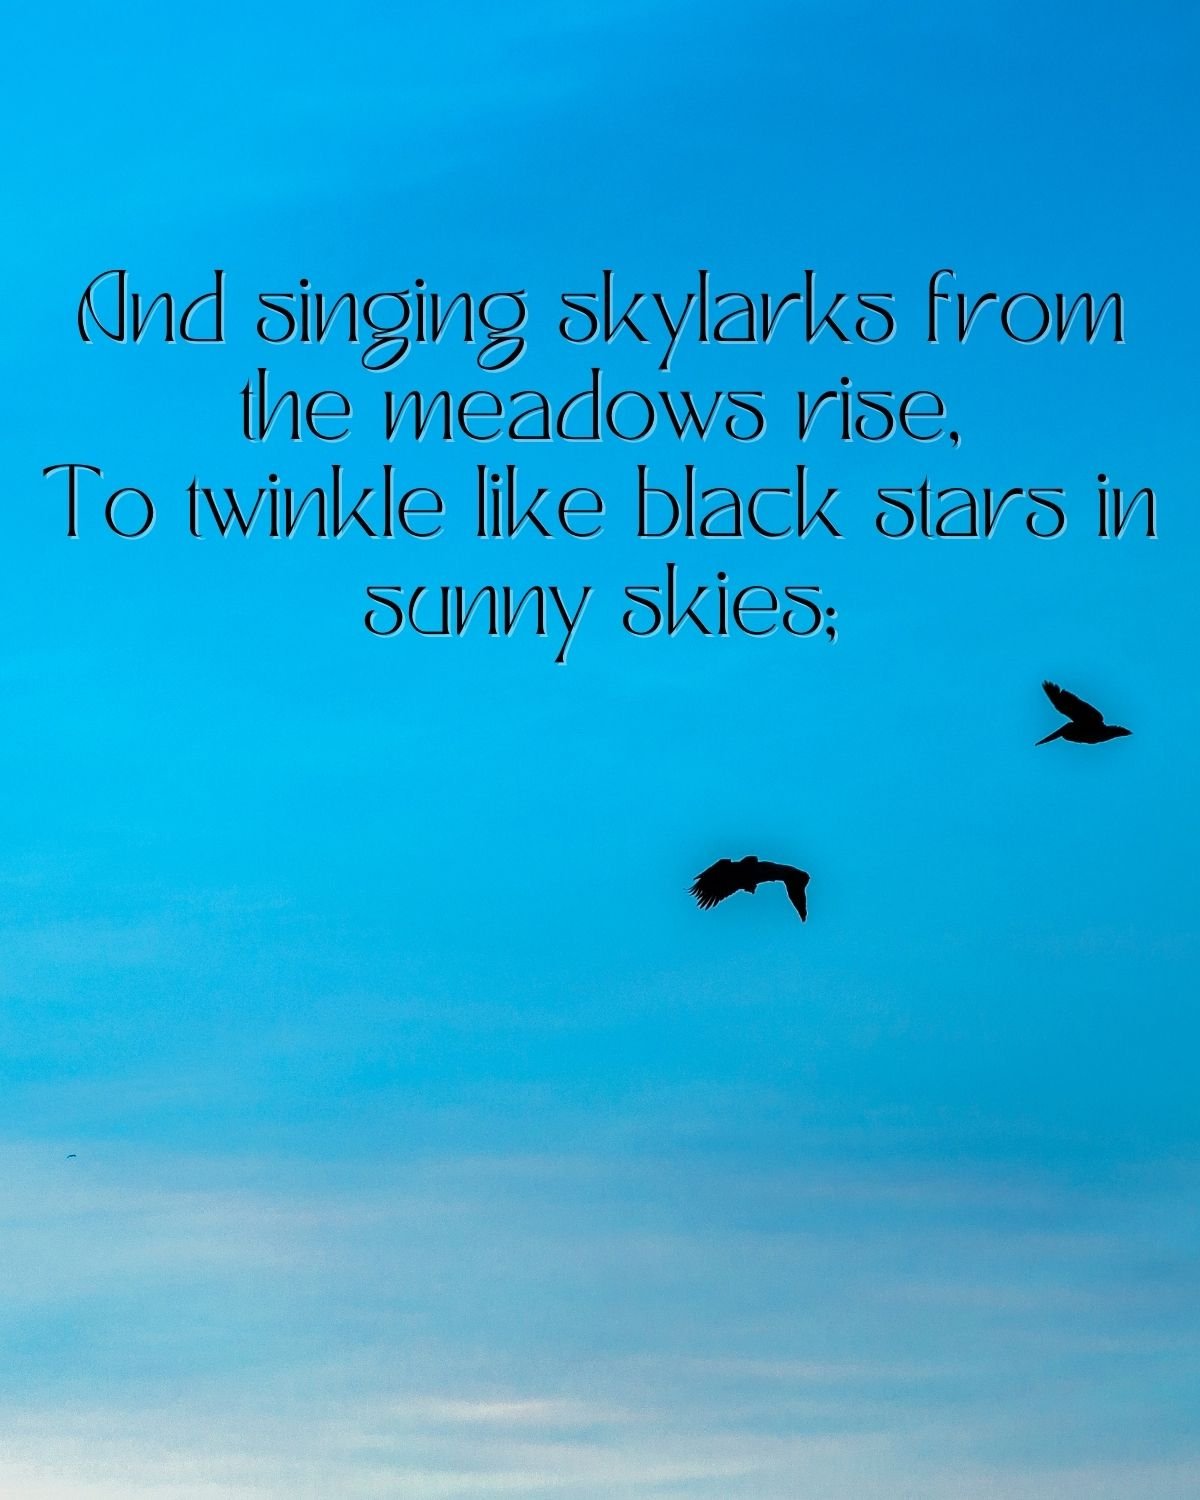 Black birds on a blue sky